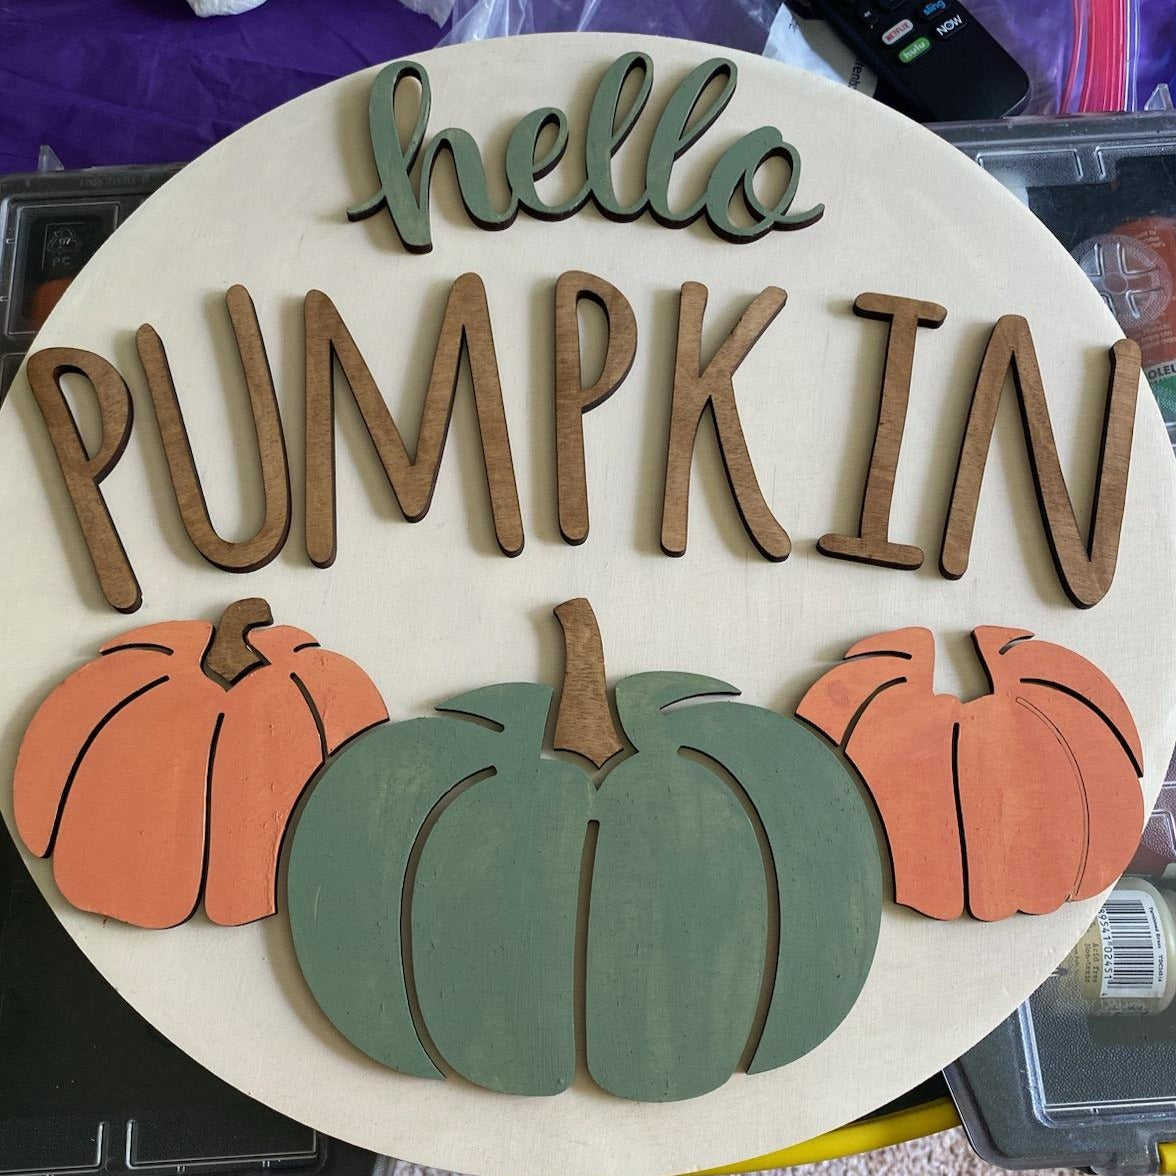 Hello Pumpkin Wooden Door Hanging Sign